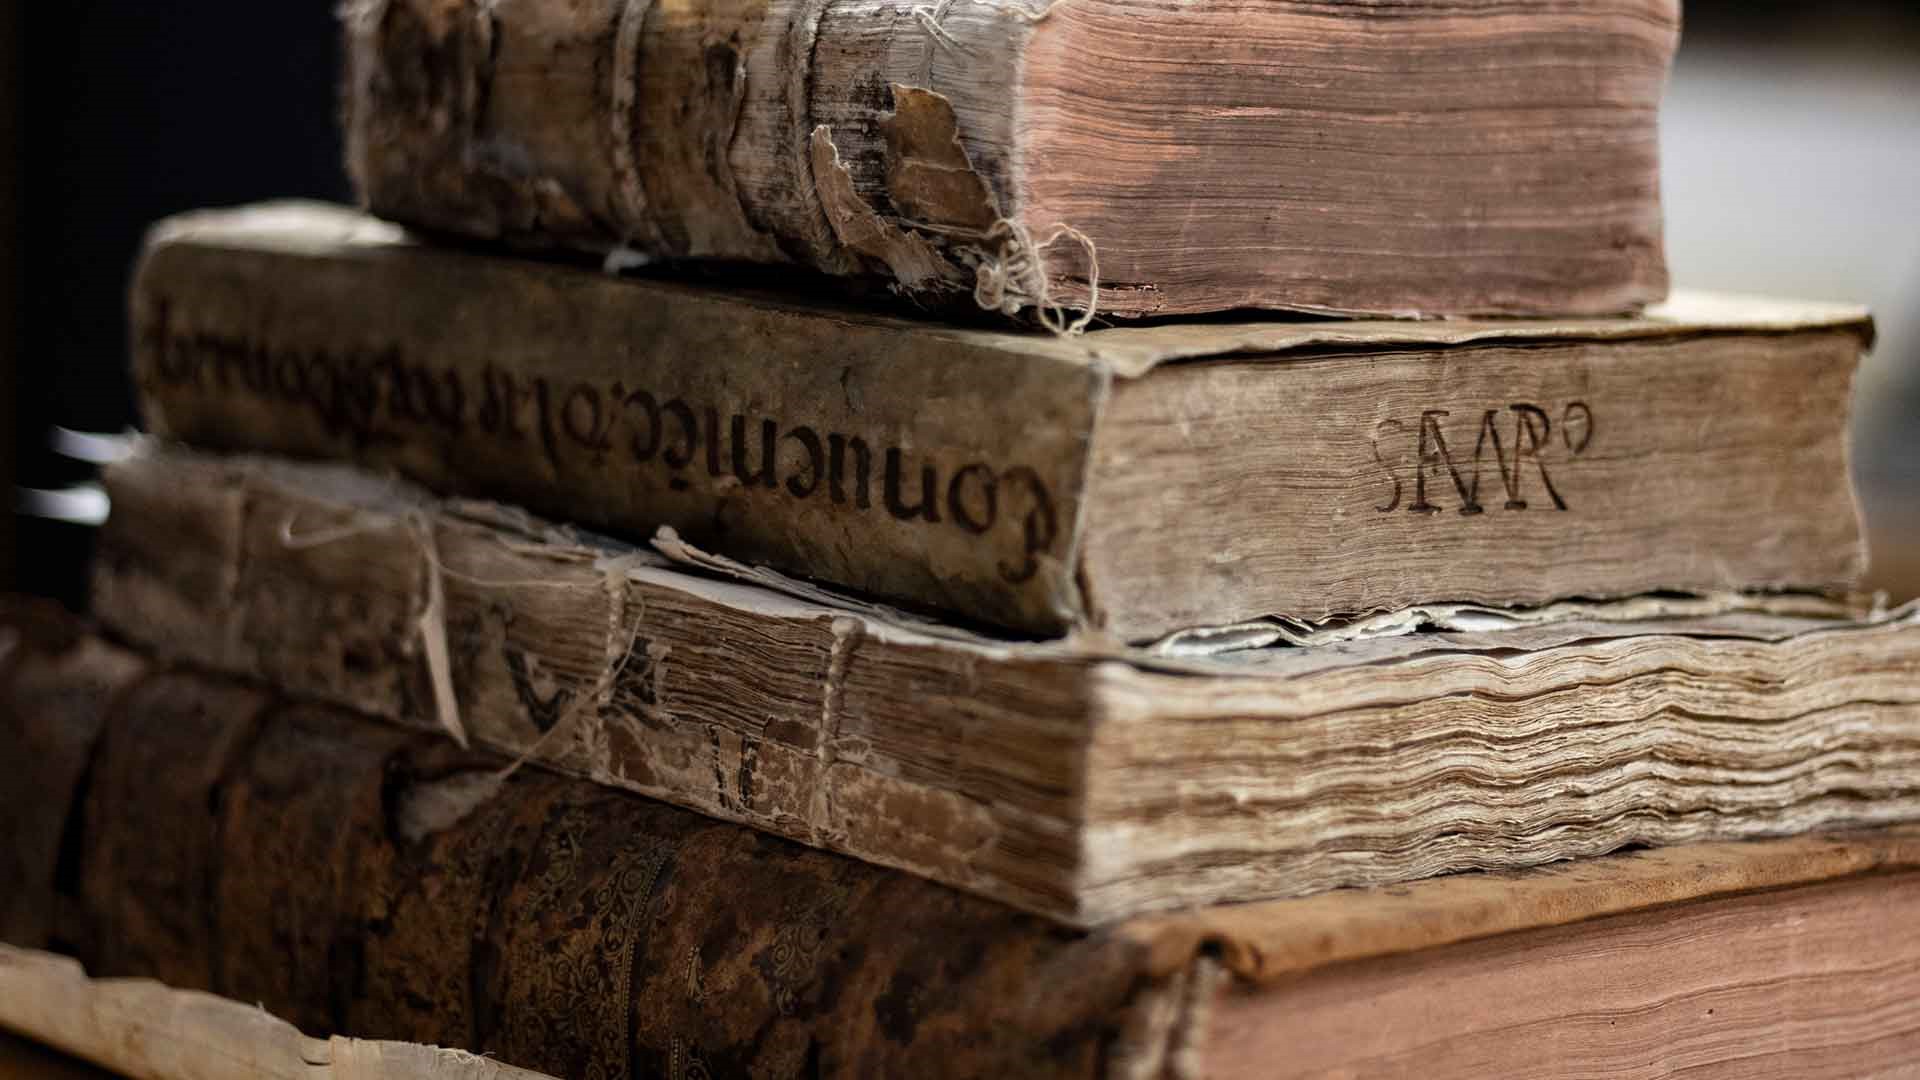 Libros antiguos